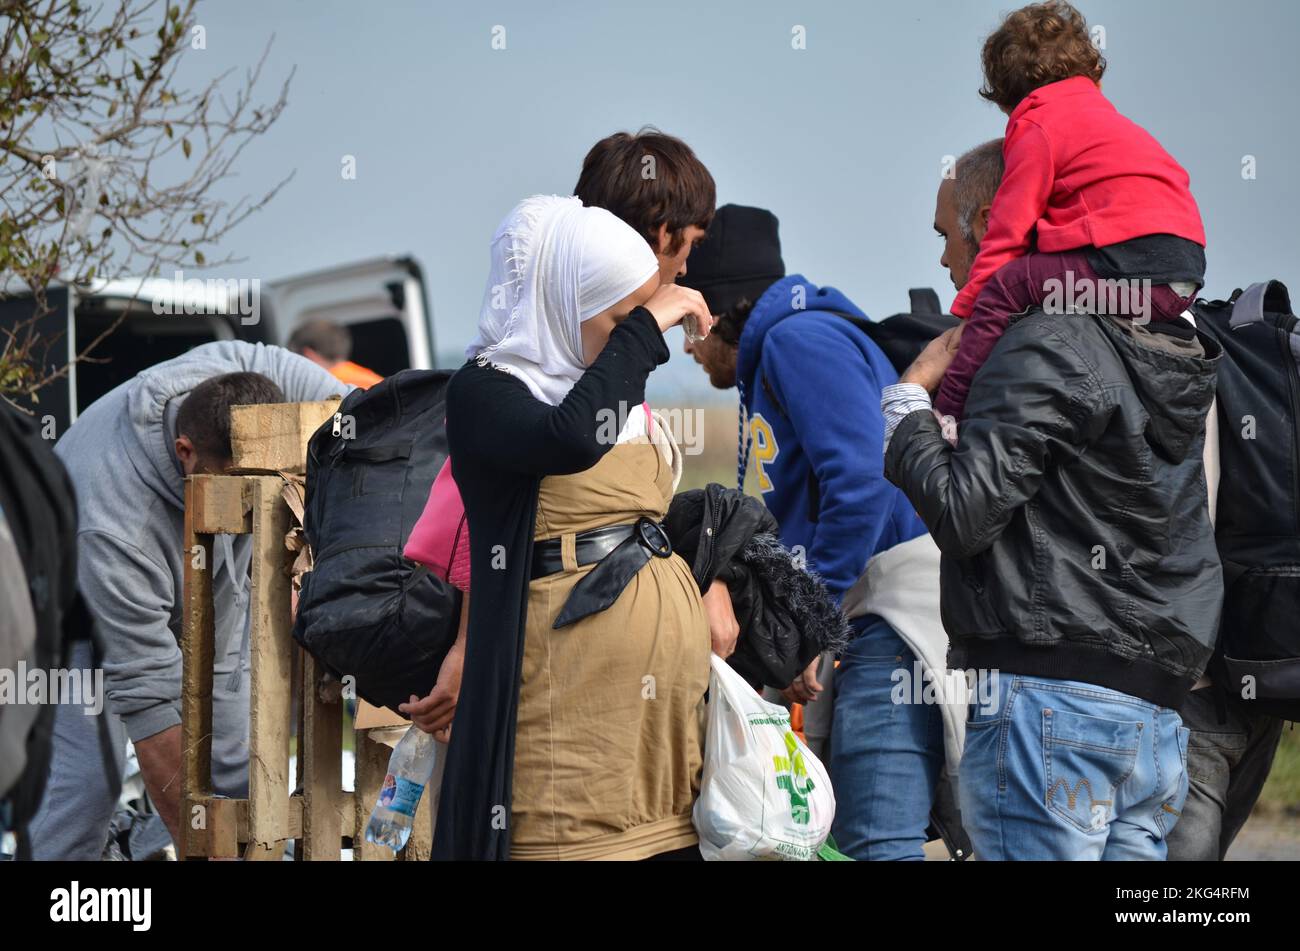 Femme enceinte avec sa famille essayant de traverser la frontière croate pour entrer dans l'Union européenne (UE) à la recherche d'une vie meilleure. Réfugiés/migrants fatigués. Banque D'Images